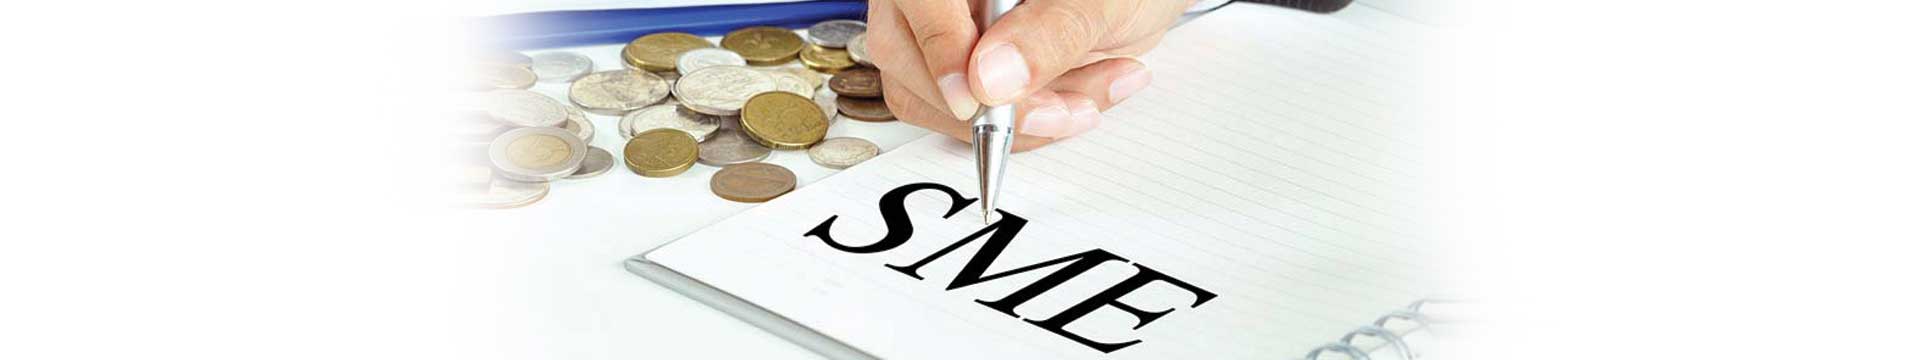 กู้เงินมาทำธุรกิจกับสินเชื่อ SME หลักทรัพย์ค้ำประกันกรุงศรี